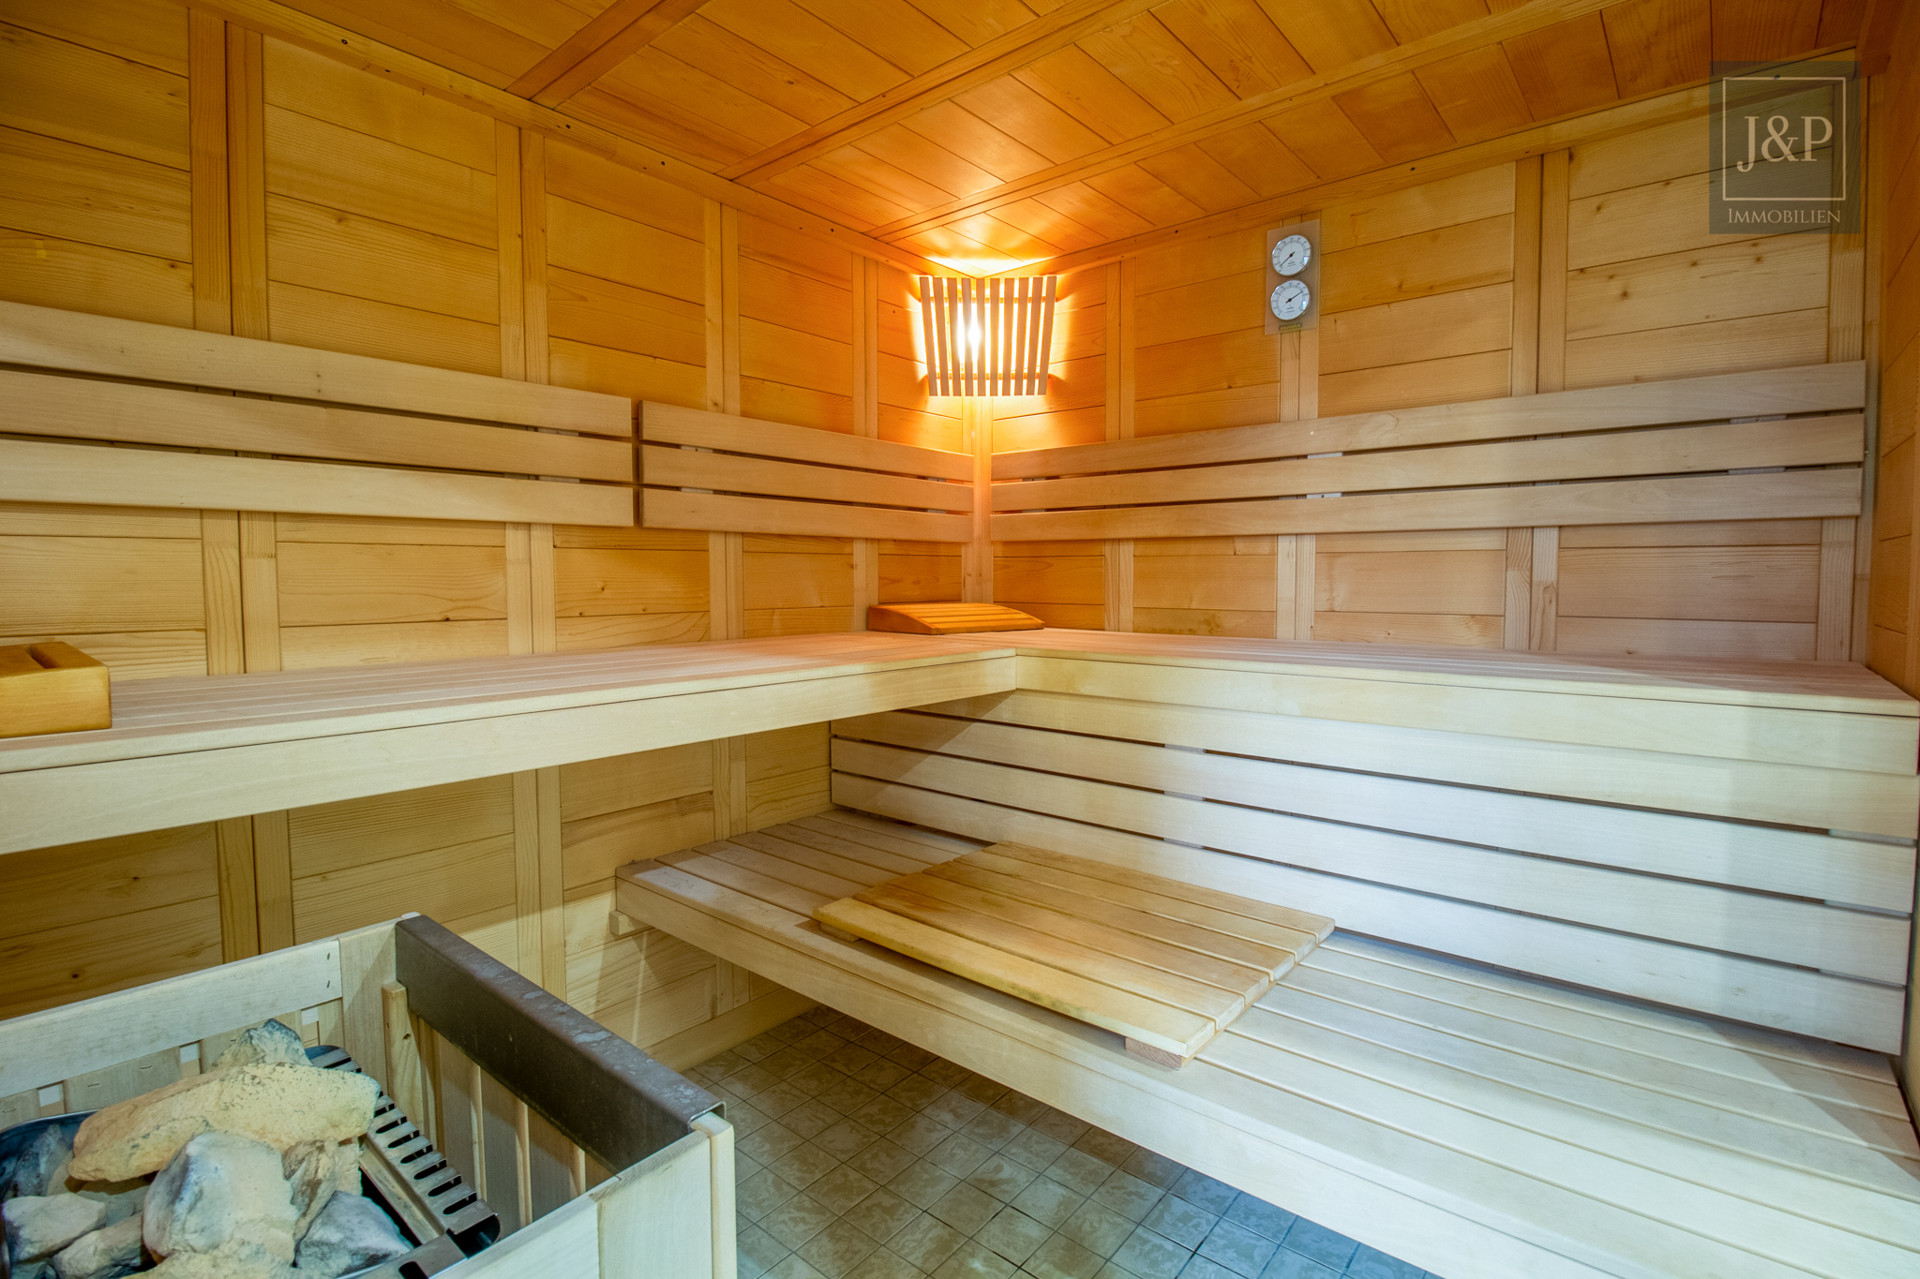 Komplett sanierte Eigentumswohnung am Bad Homburger Kurpark mit Pool, Sauna & gepflegten Gartenbereich - Sauna